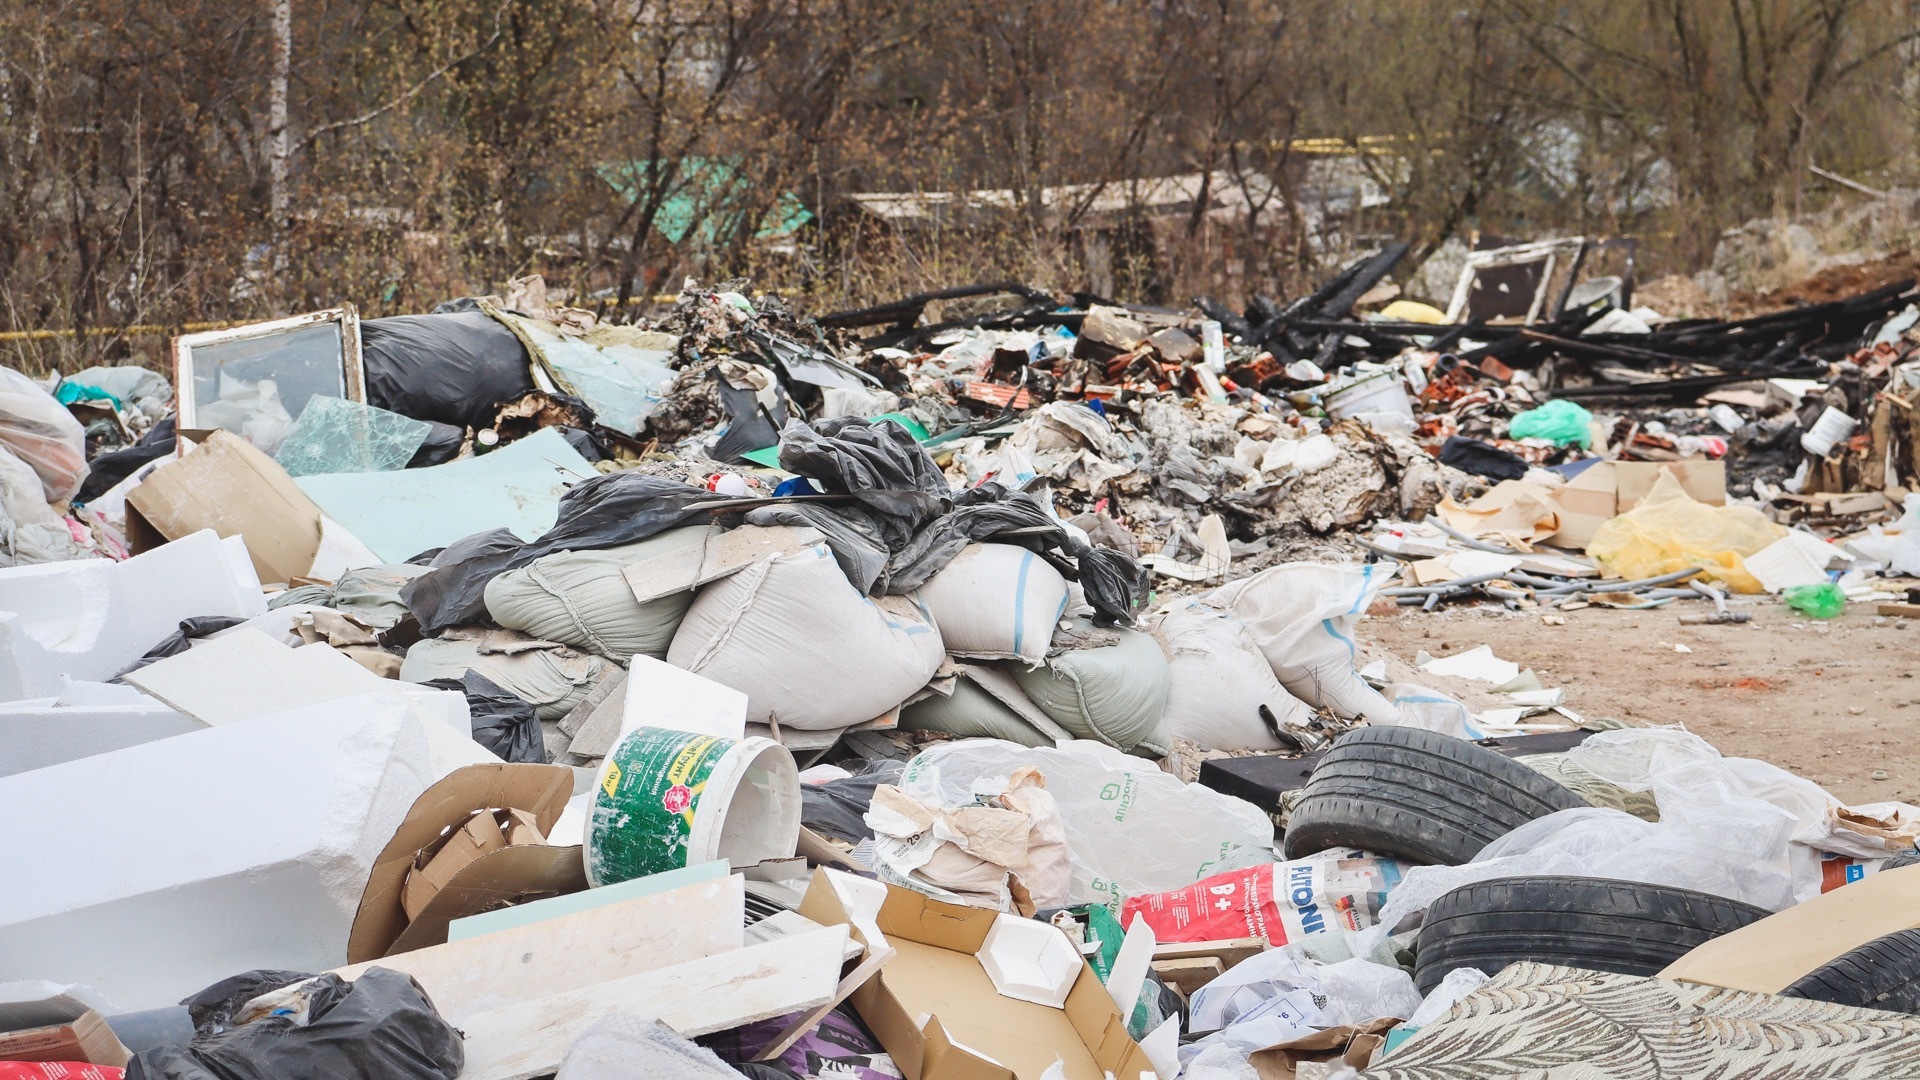 Ответственного за незаконный мусорный полигон нашли в Челябинске. Человек неместный